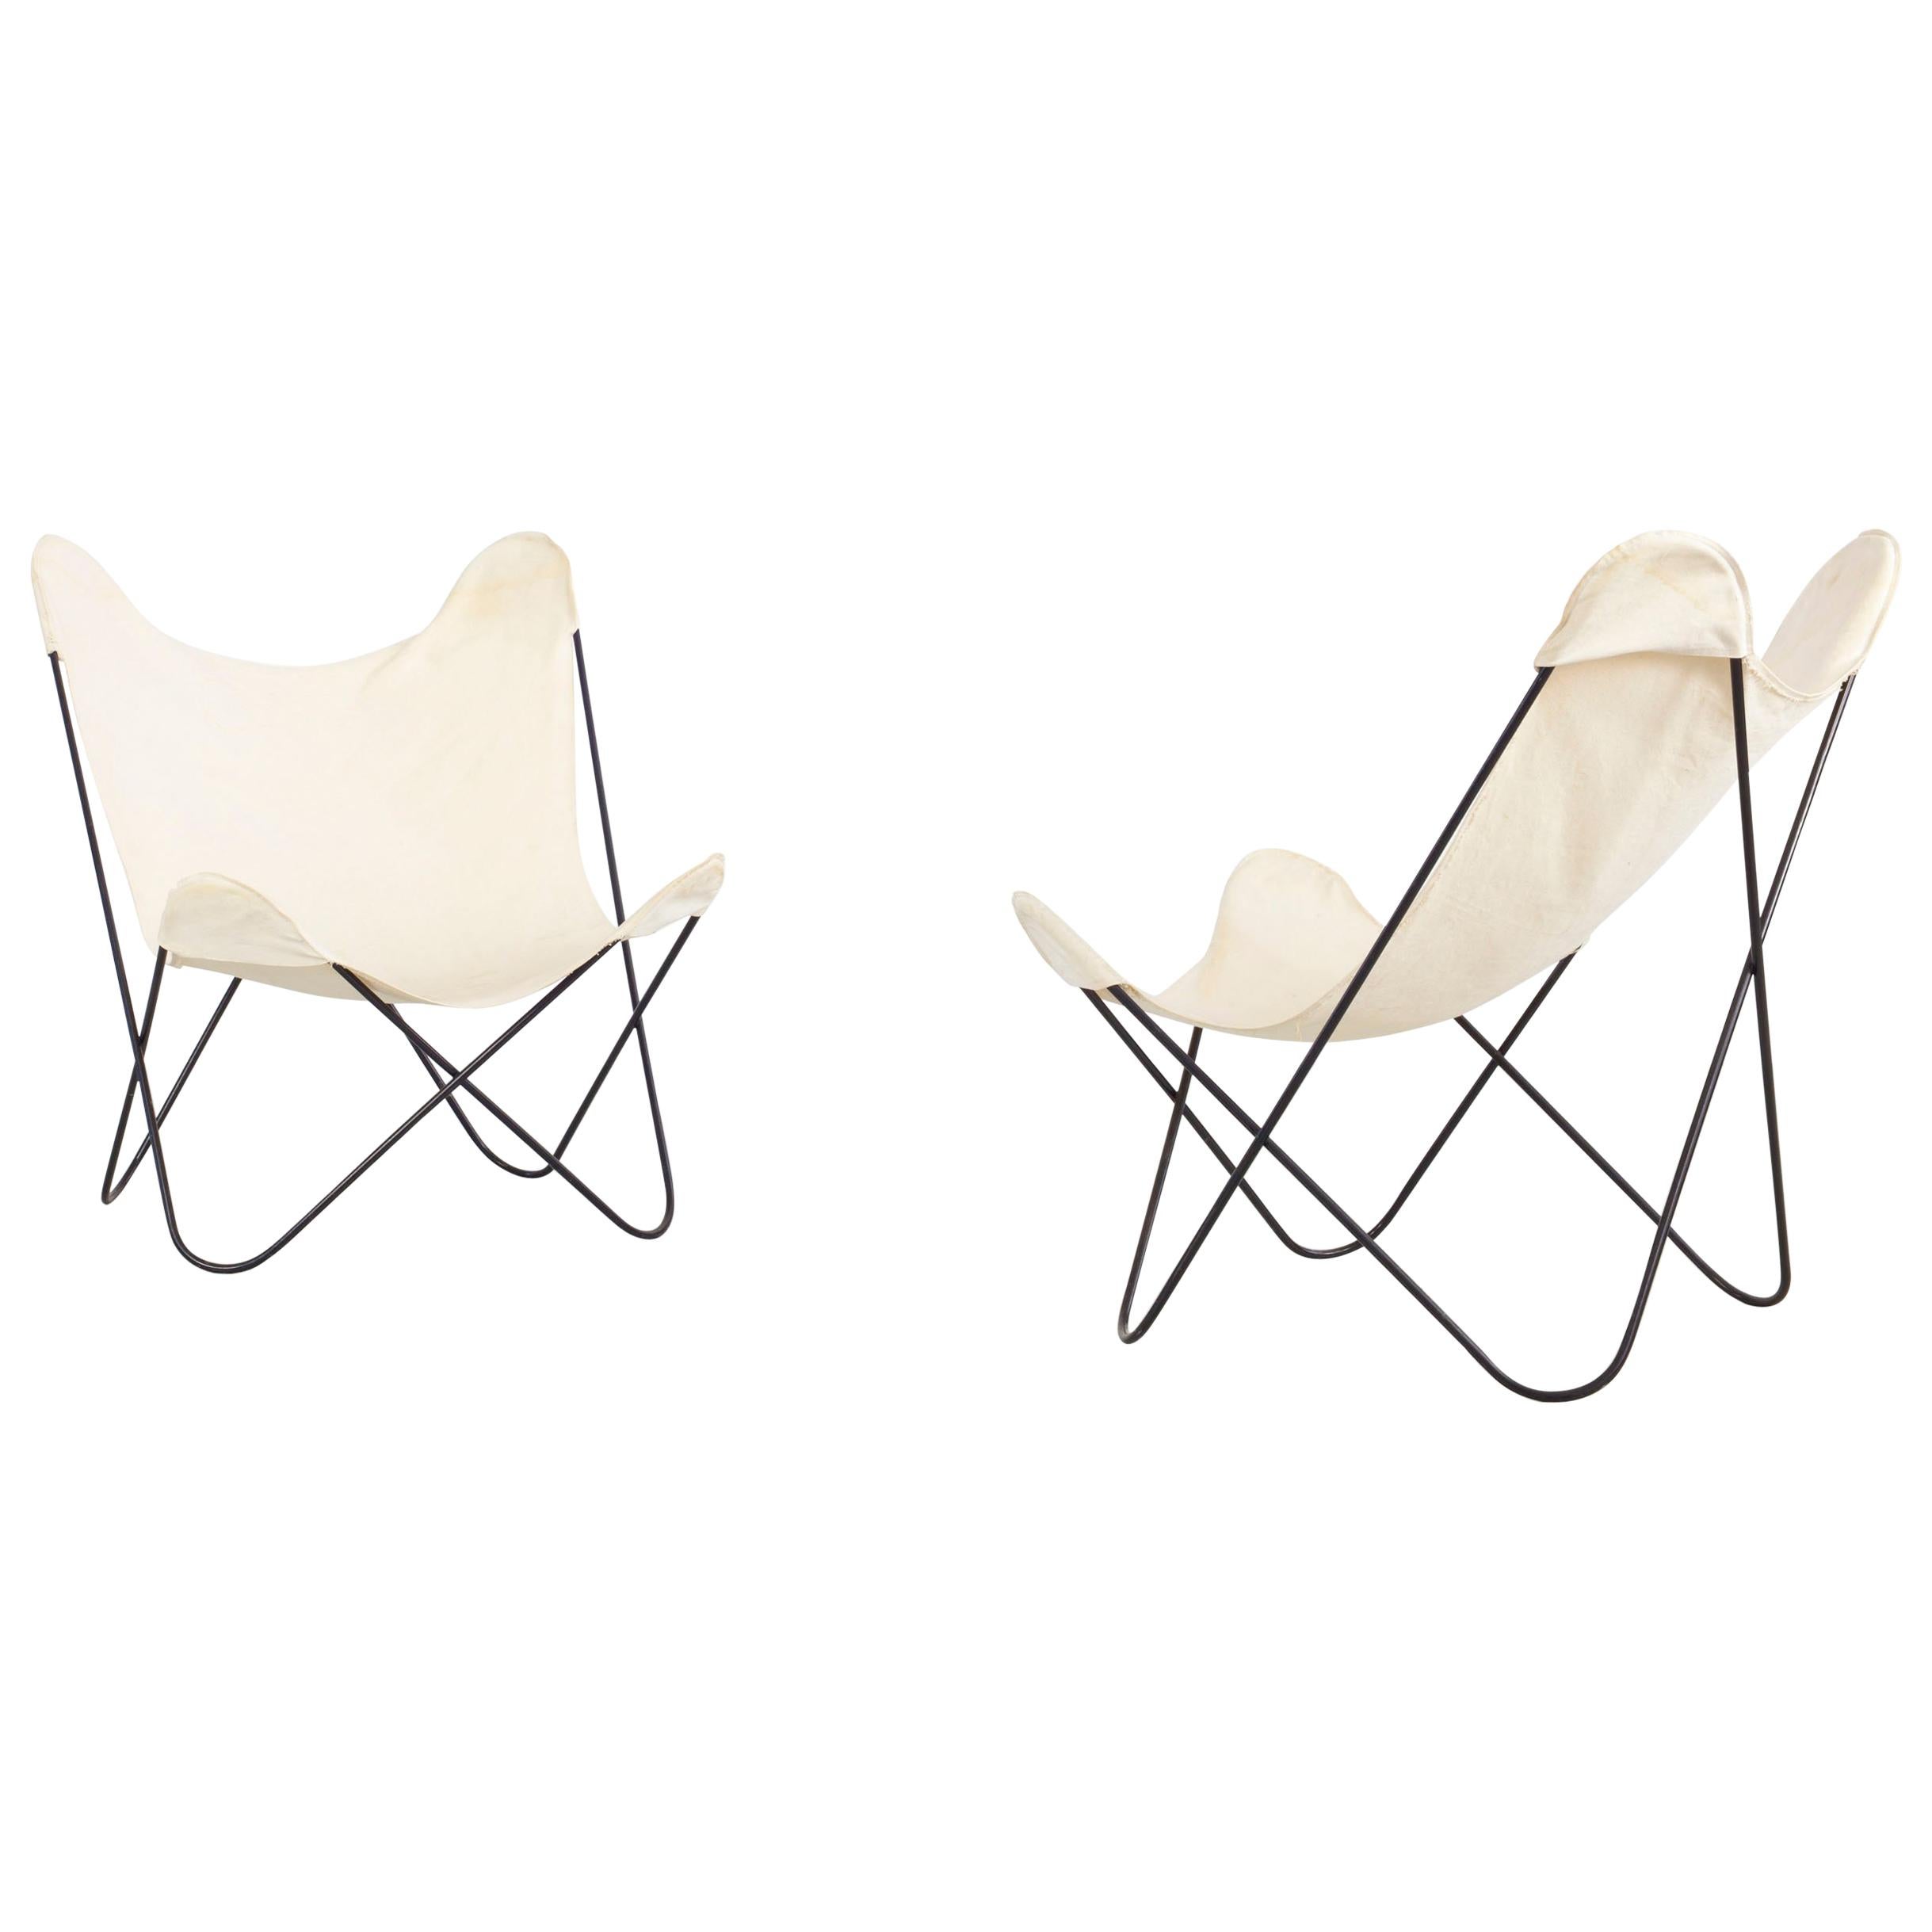 Paire de chaises blanches « Tripolina » de Gastone Rinaldi, fabriquées par Rima